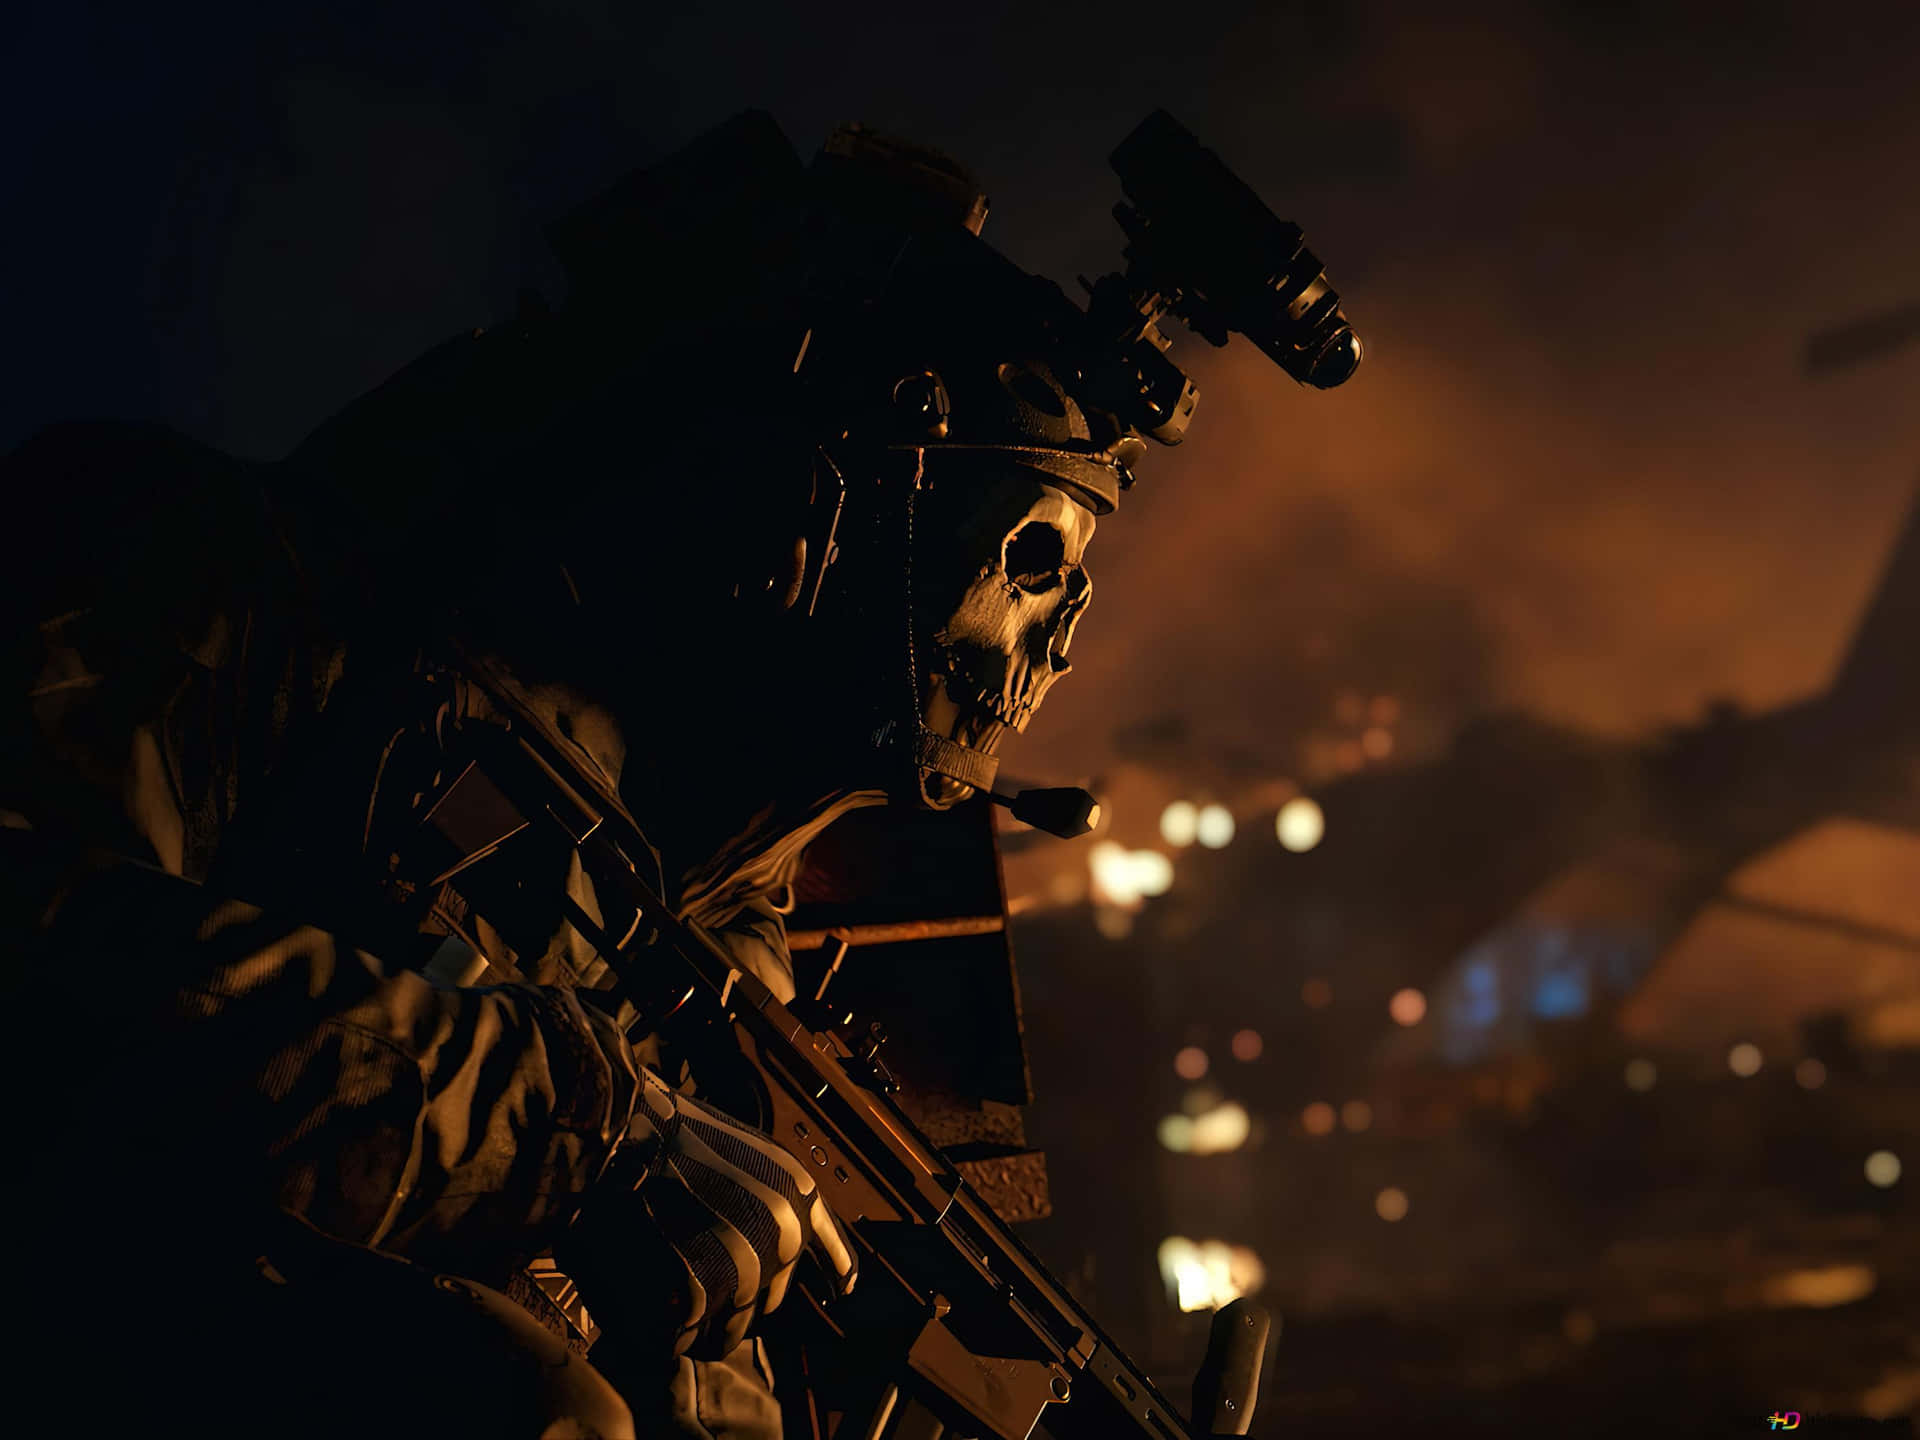 Un'immagineavvincente E Piena D'azione Di Call Of Duty Modern Warfare In Sorprendente Risoluzione Hd. Sfondo